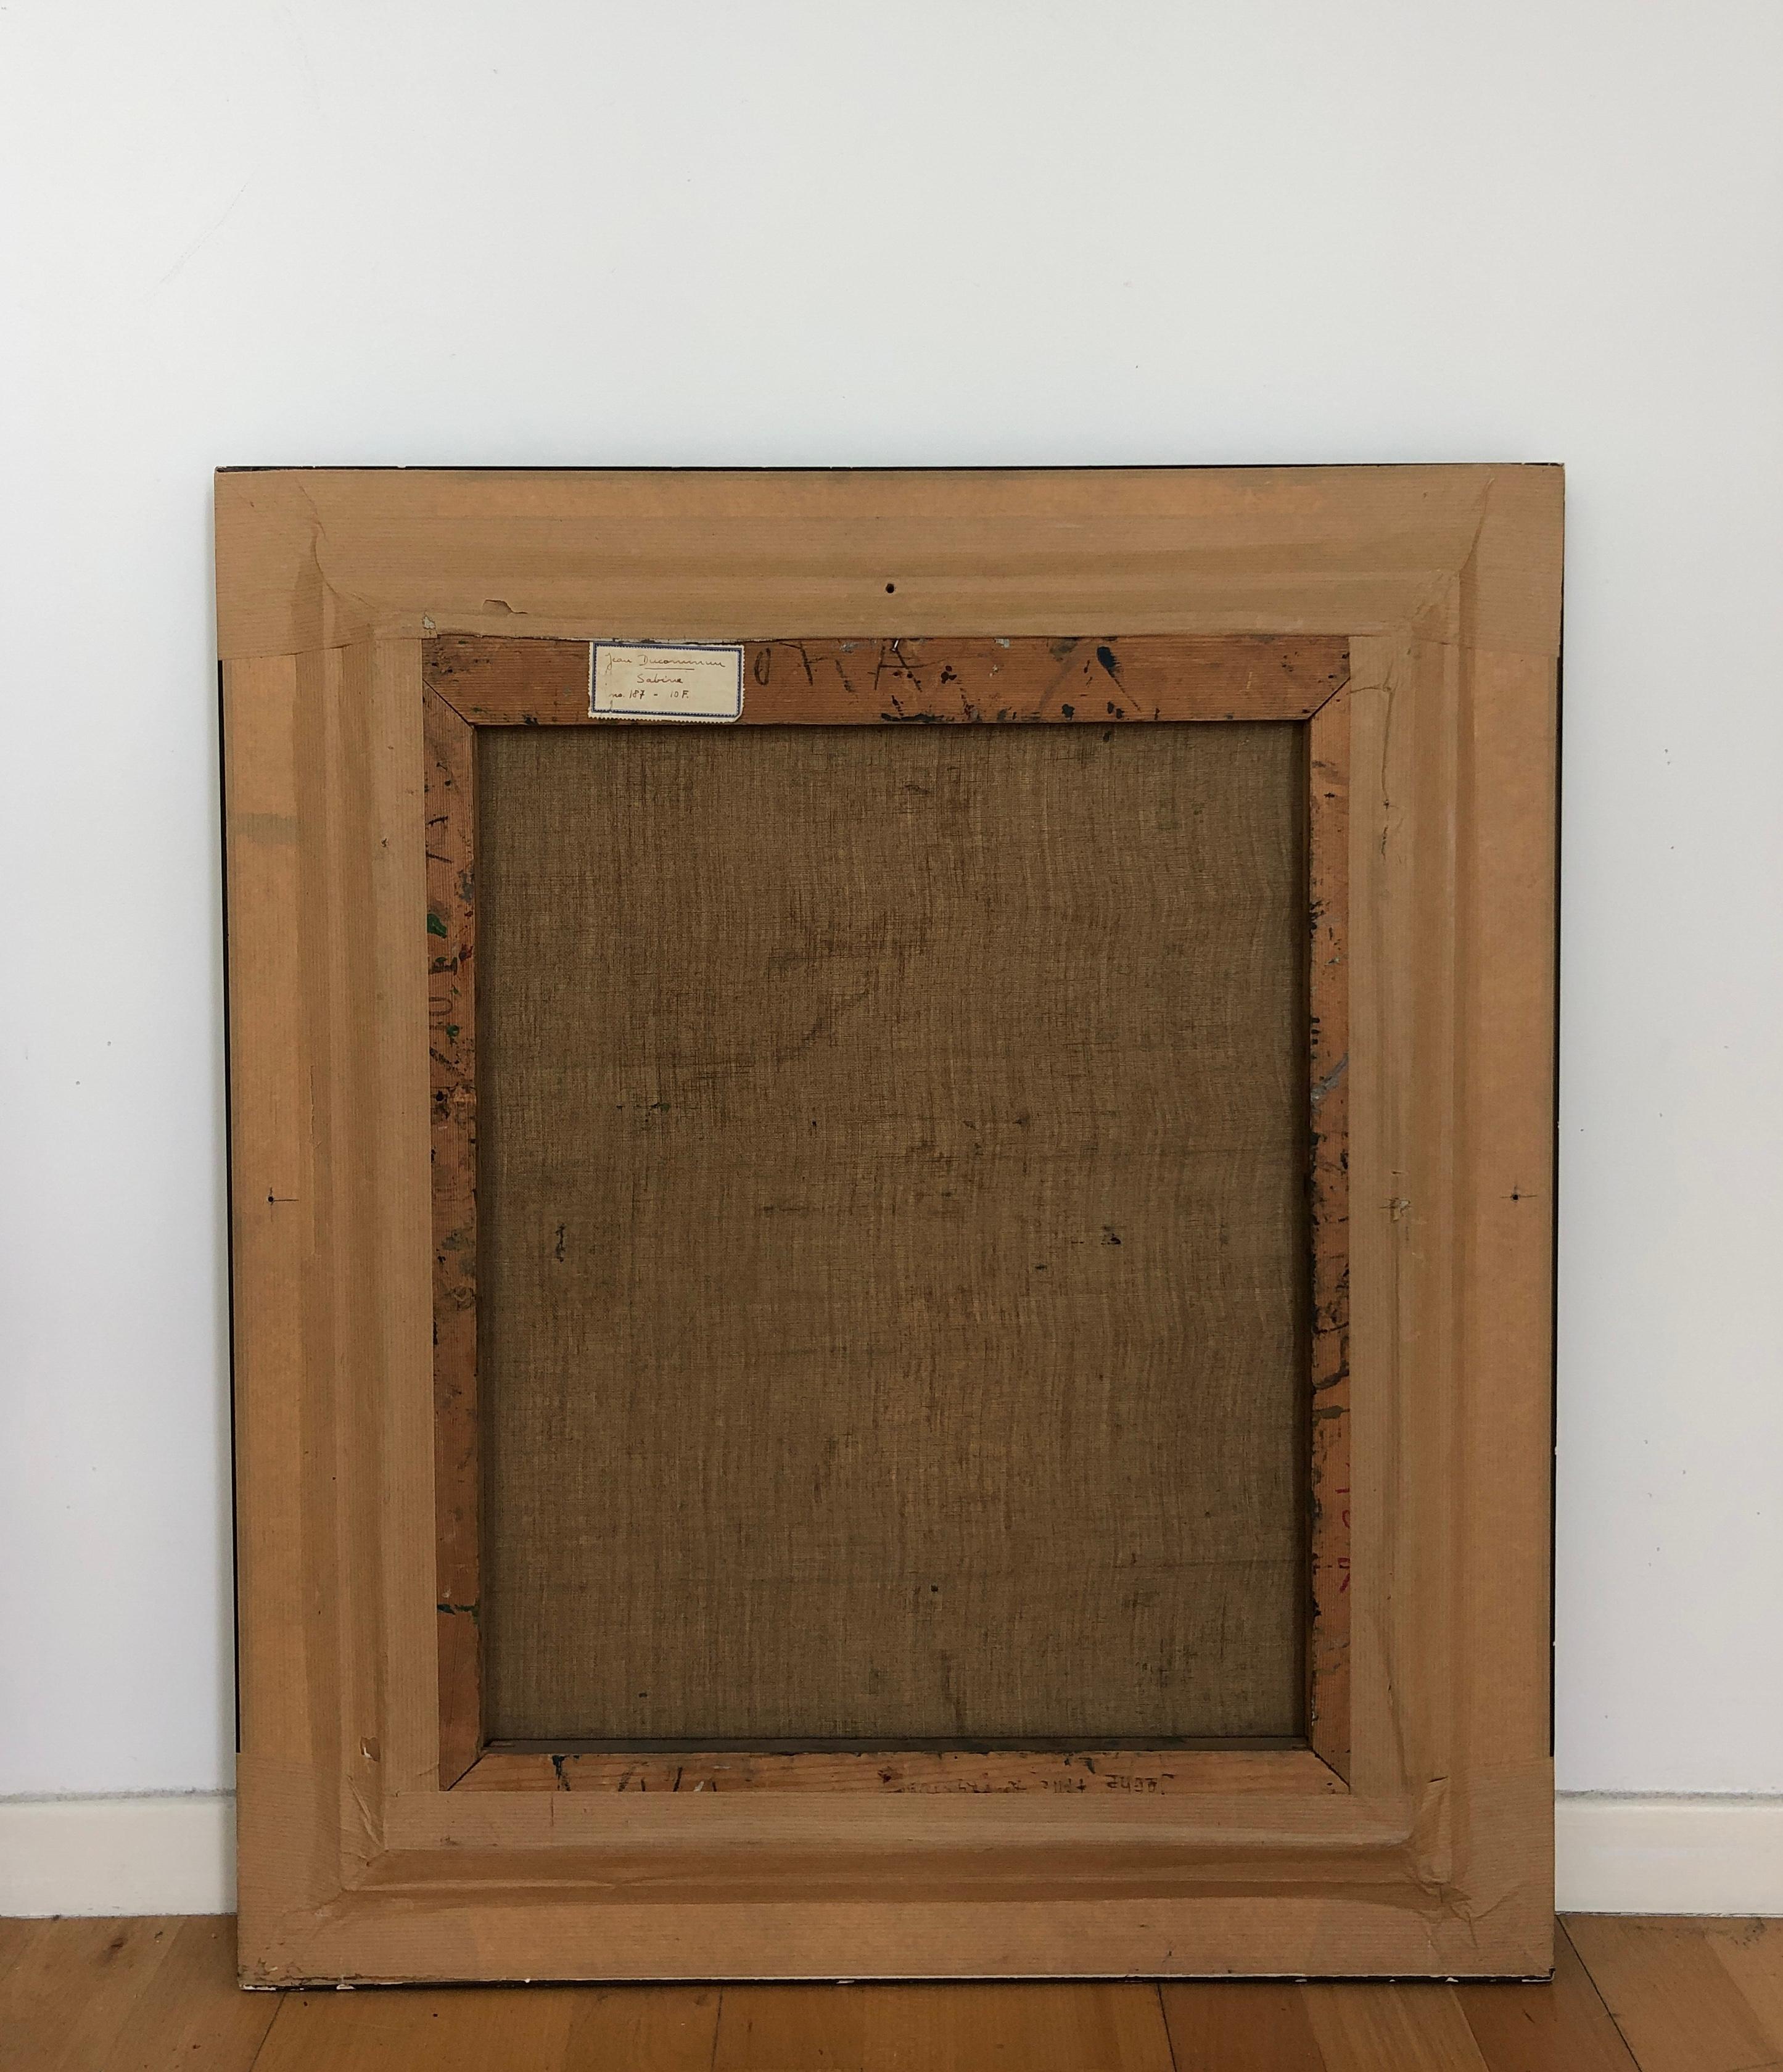 Work on canvas
Golden wooden frame
69.5 x 60.5 x 3.5 cm